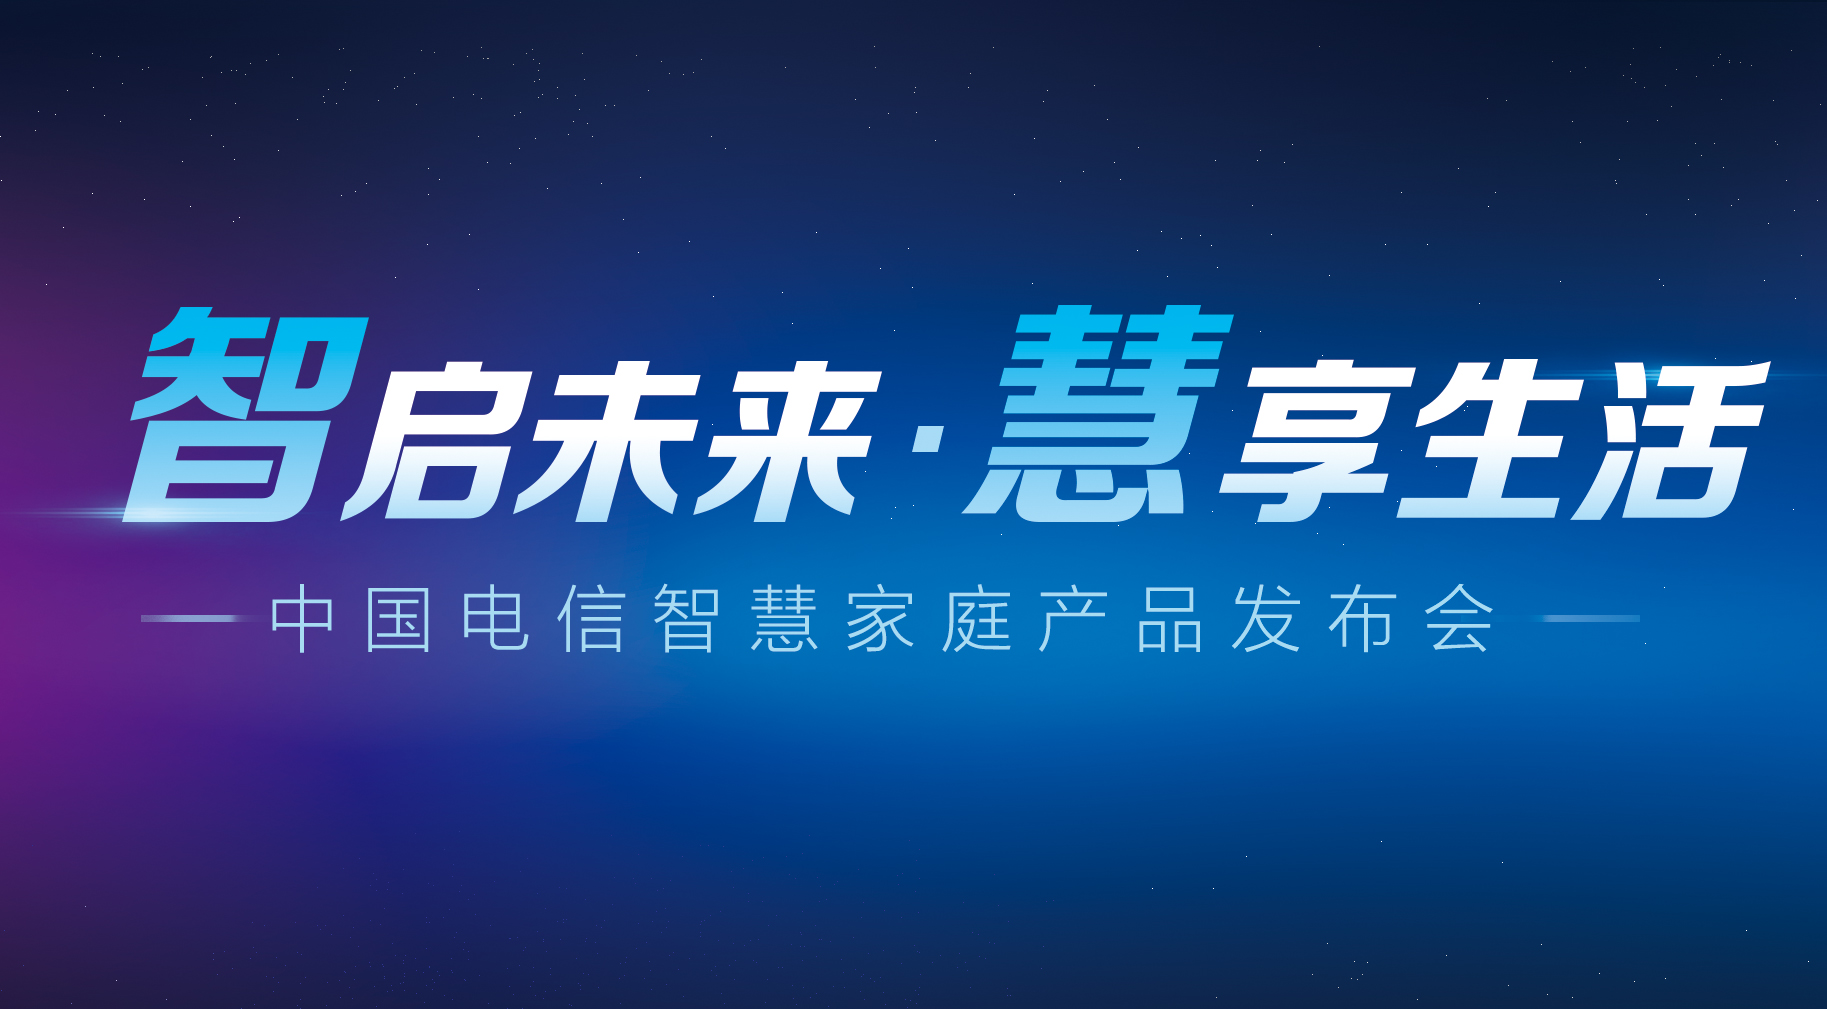 中国电信发布智能新品 落实网络强国构建智慧家庭